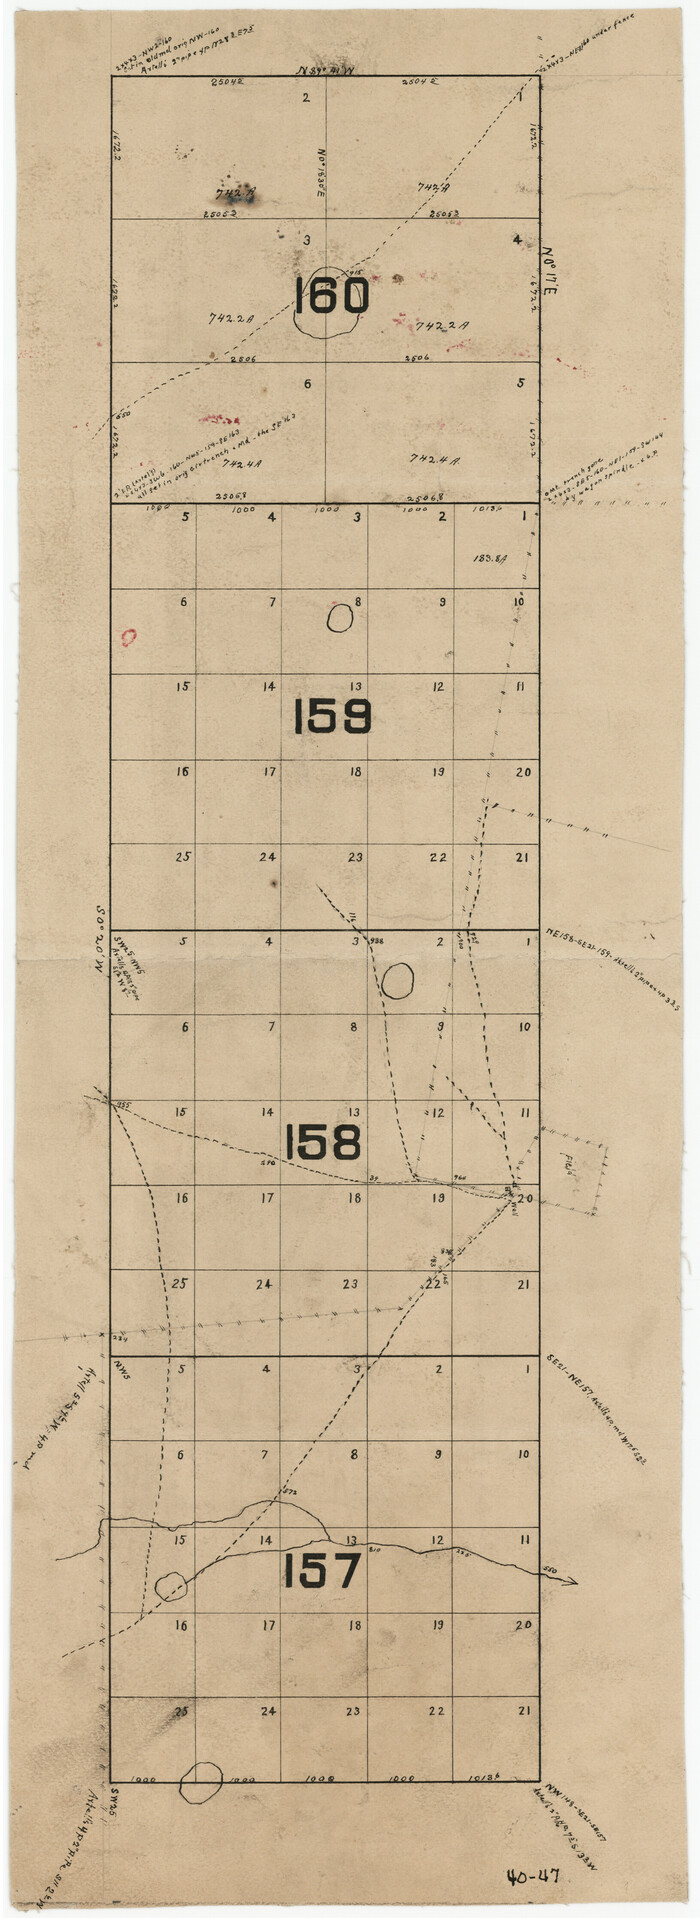 90298, [Leagues 157-160], Twichell Survey Records